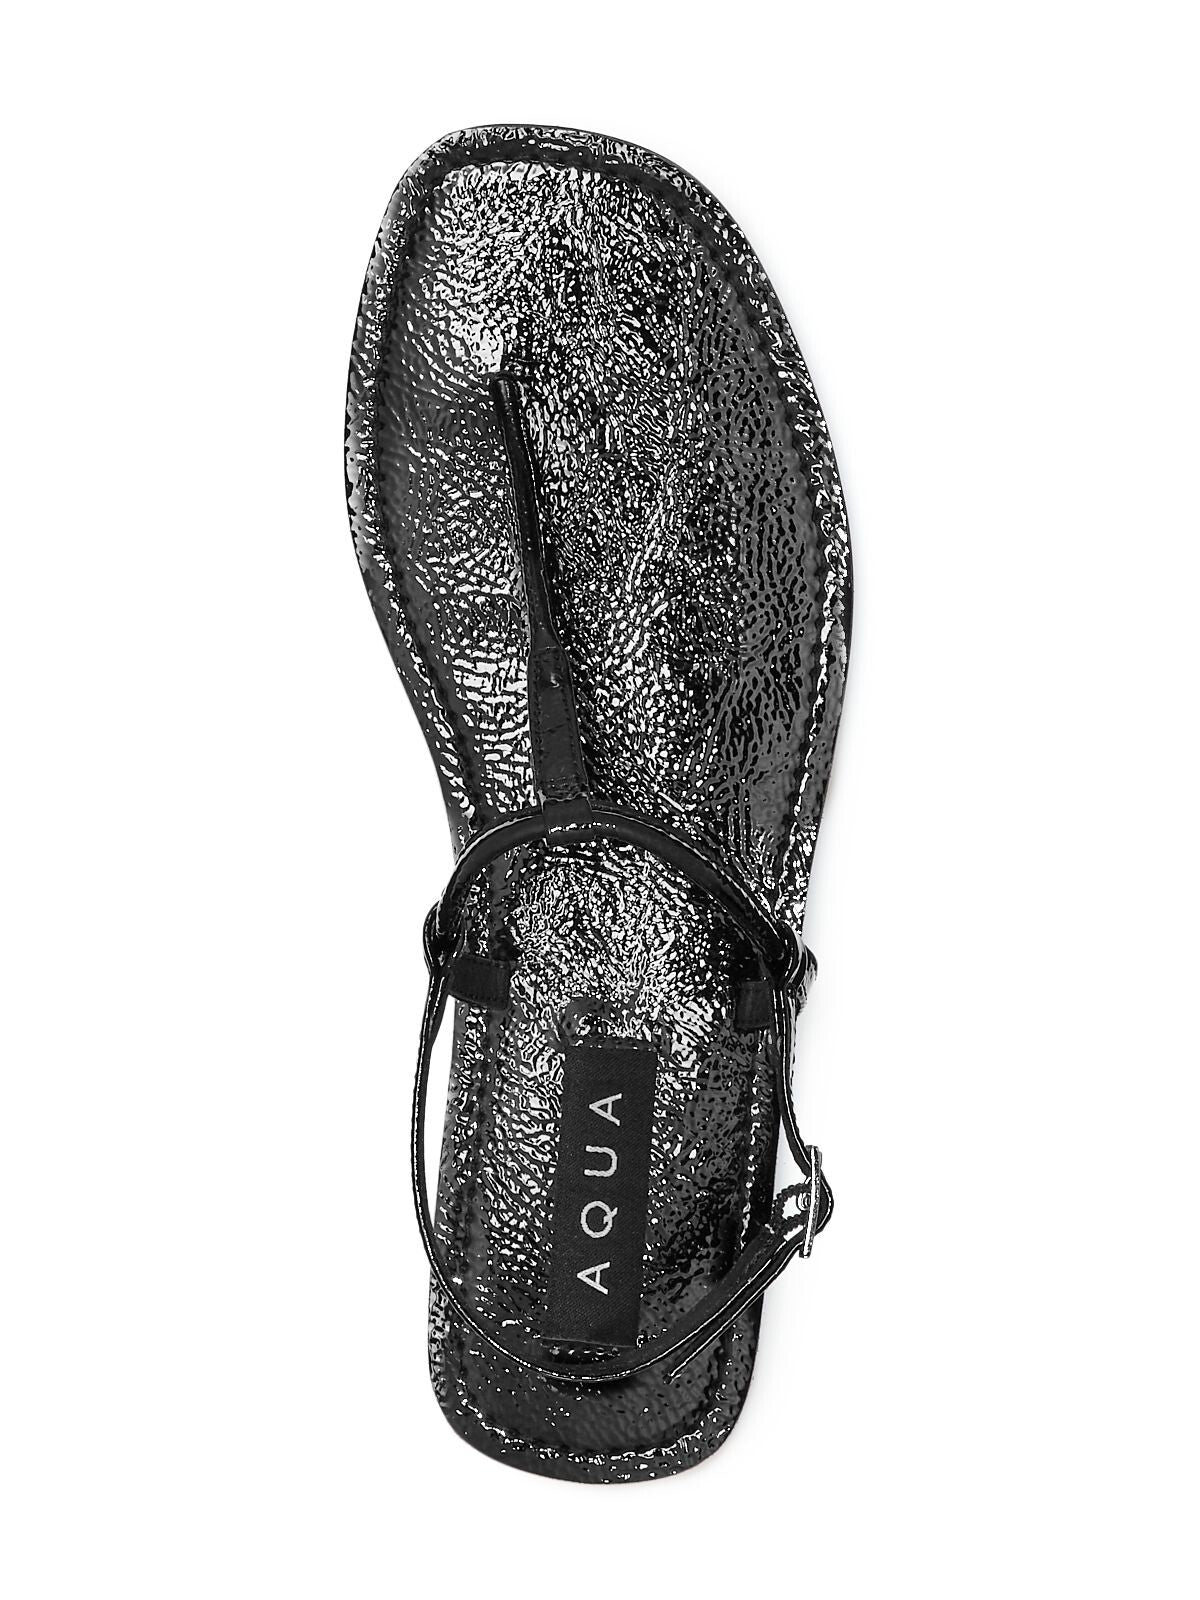 AQUA Womens Black T-Strap Zen Round Toe Buckle Thong Sandals Shoes M